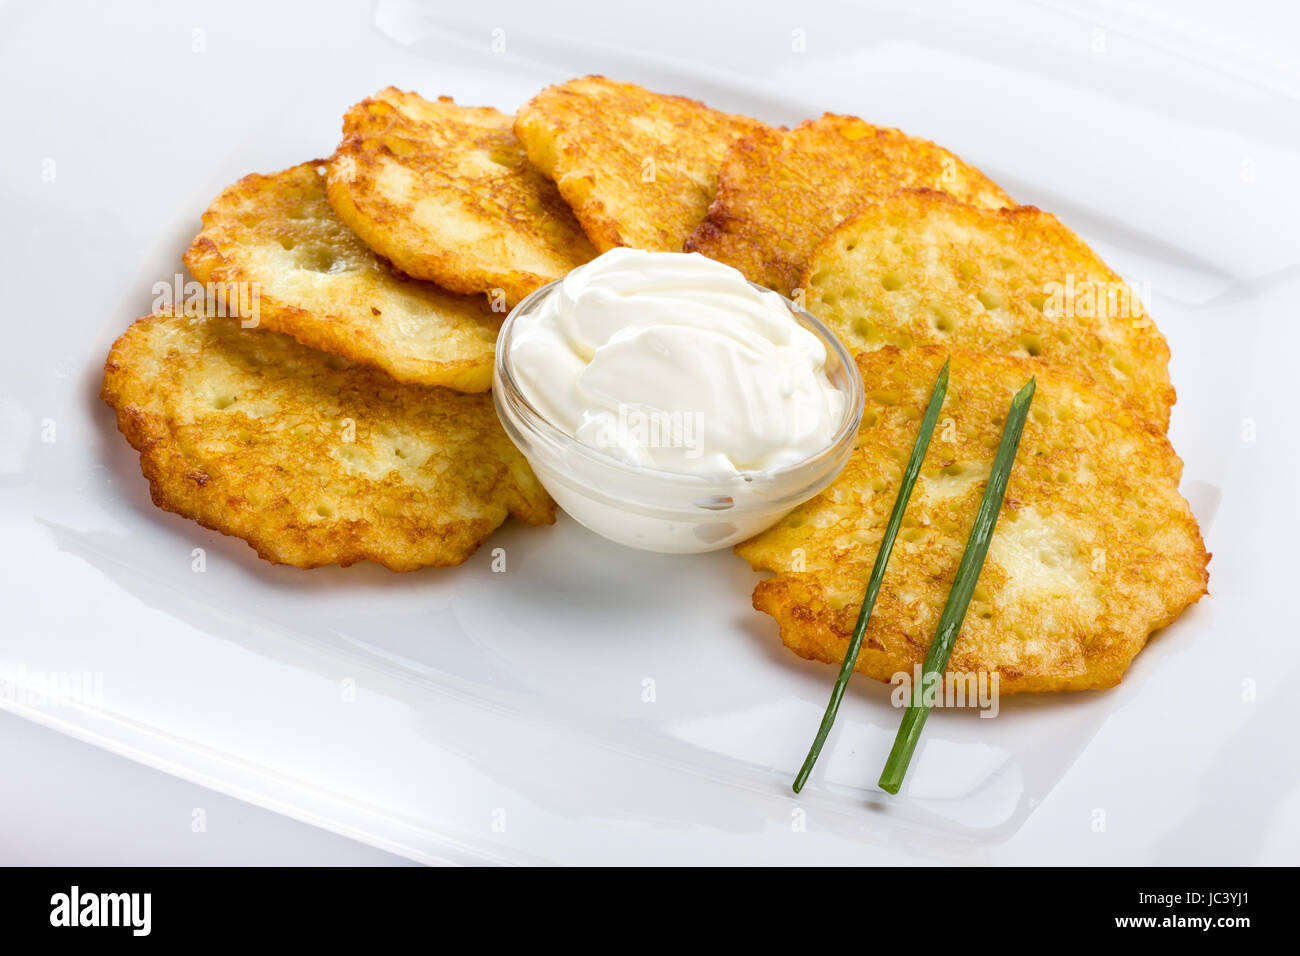 Potato Pancake with sour cream on white background Stock Photo